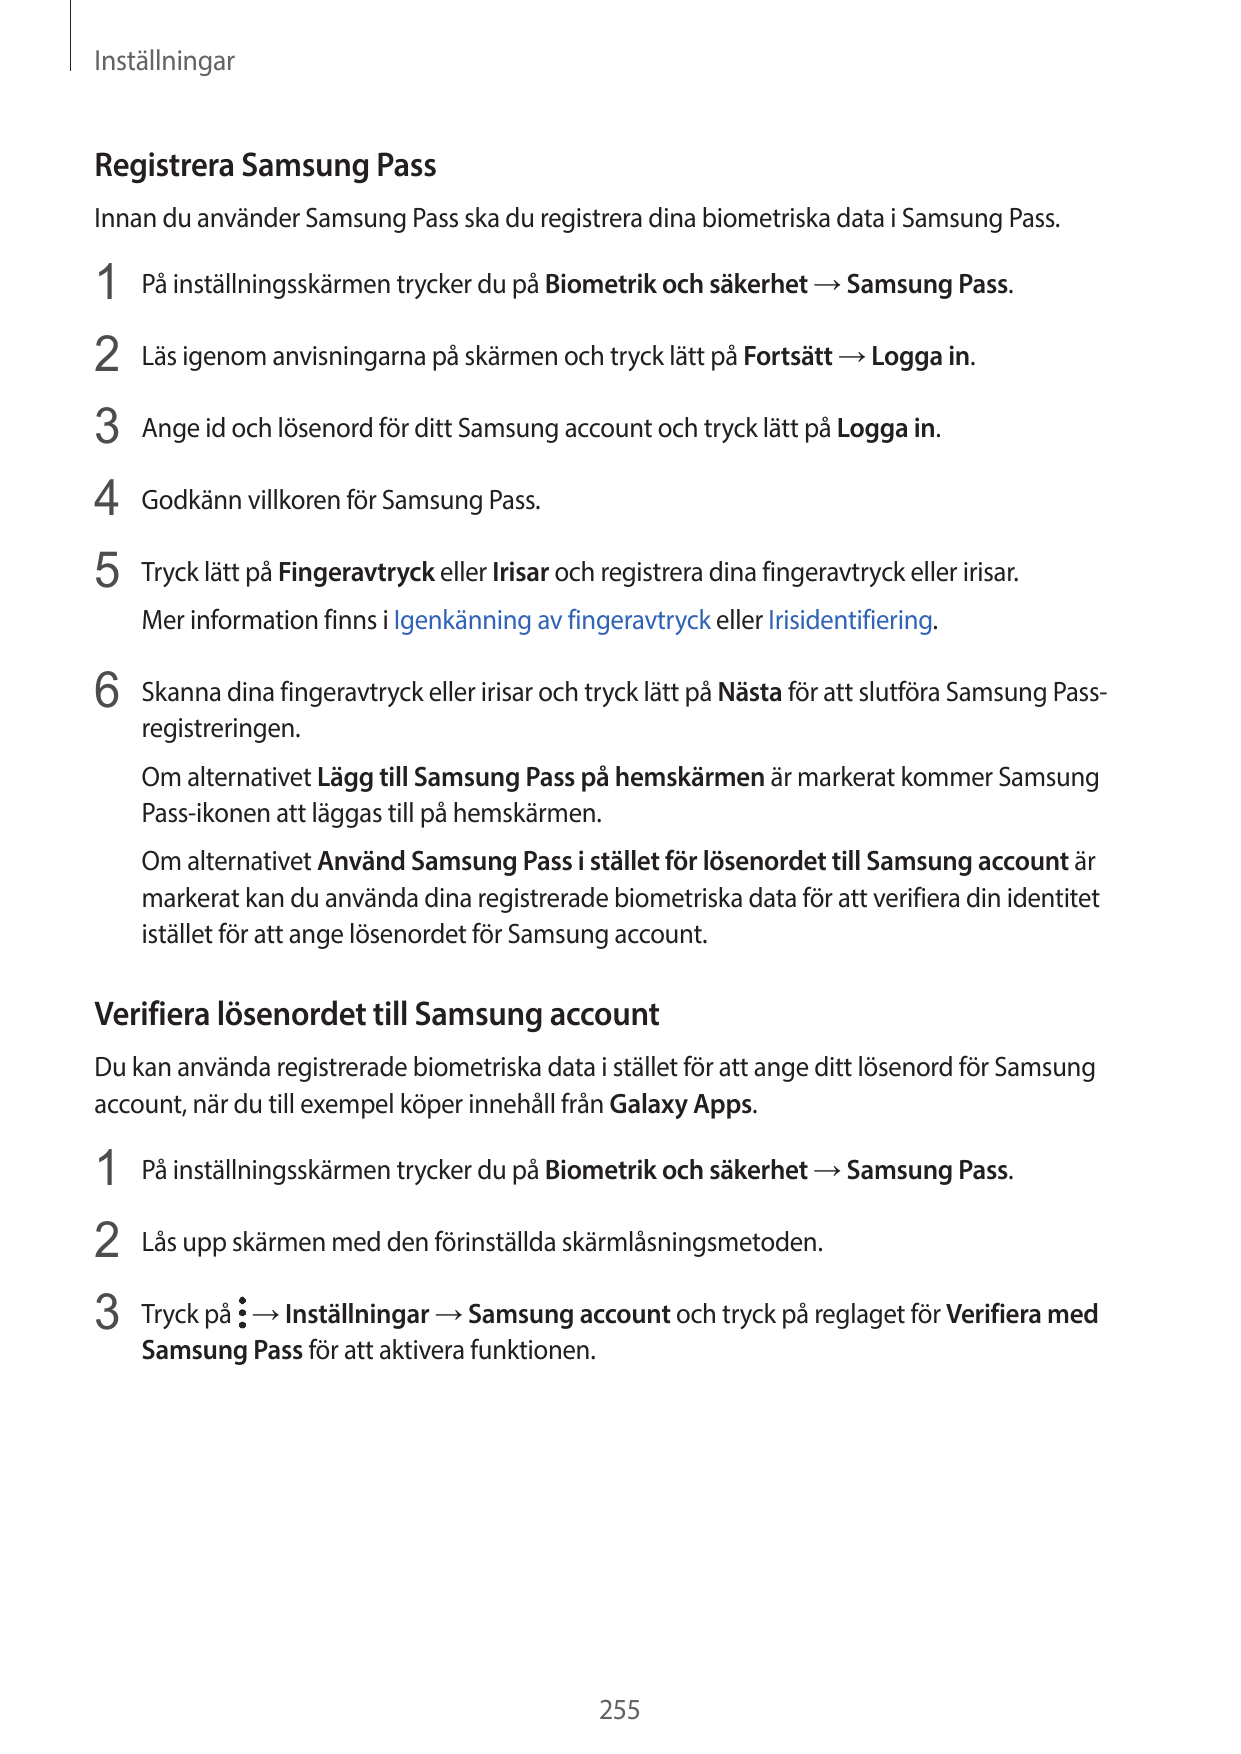 InställningarRegistrera Samsung PassInnan du använder Samsung Pass ska du registrera dina biometriska data i Samsung Pass.1 På i